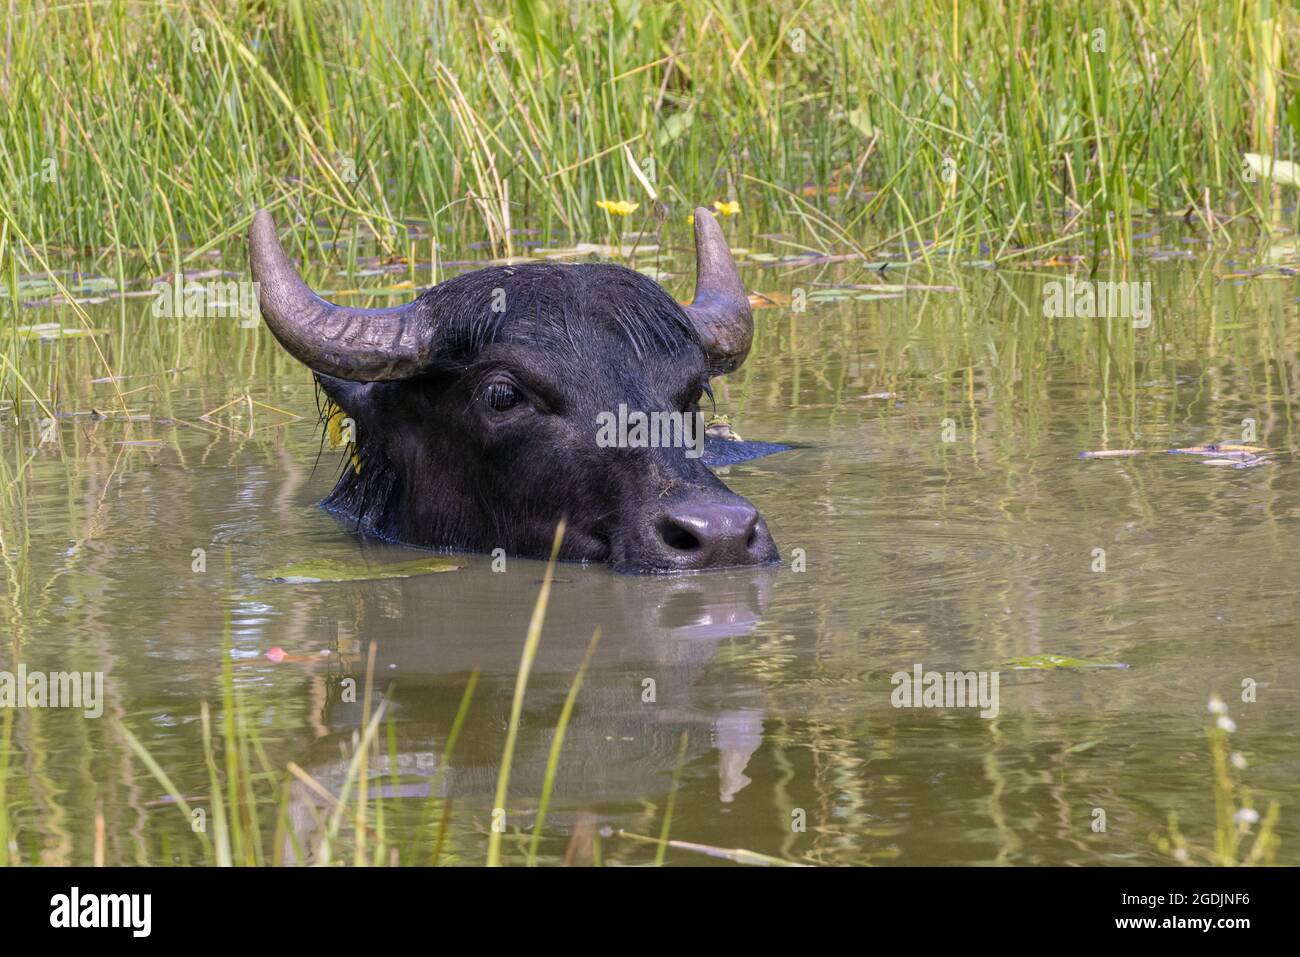 Bufali d'acqua asiatici, anoa (specifiche di Bubalus), schwimmt im Teich, ritratto, Germania Foto Stock